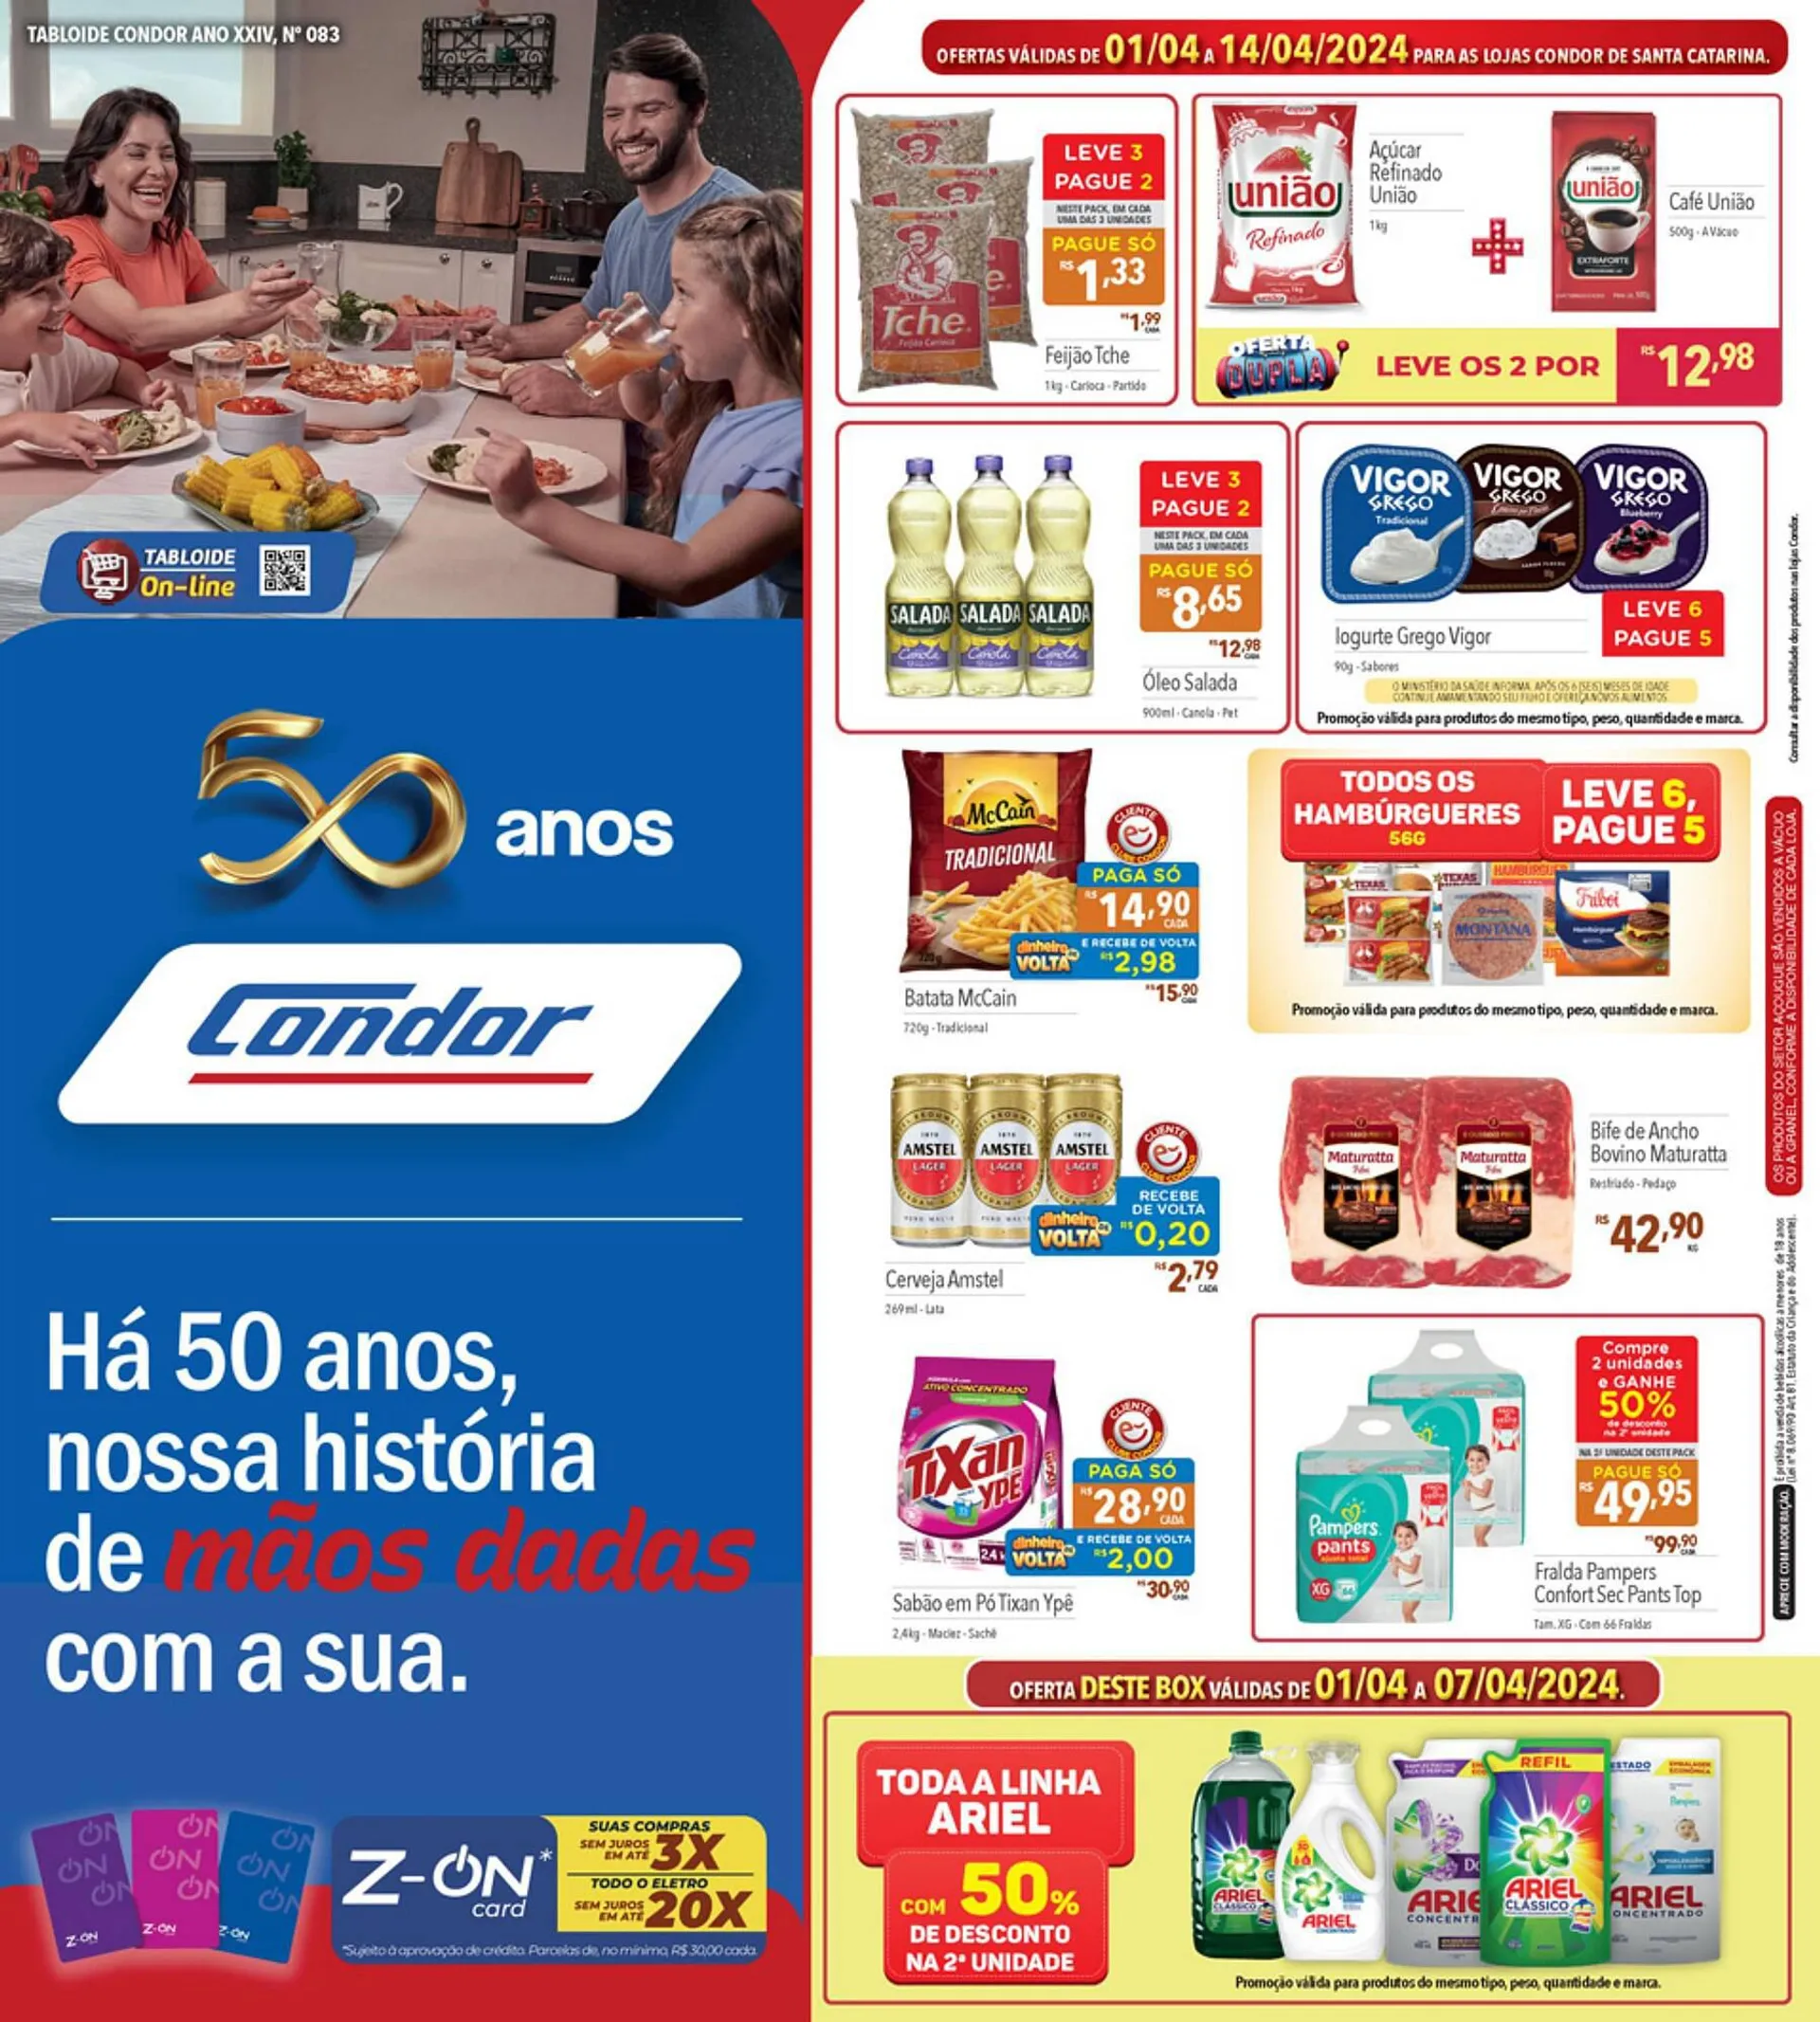 Encarte de Catálogo Supermercados Condor 2 de abril até 14 de abril 2024 - Pagina 1